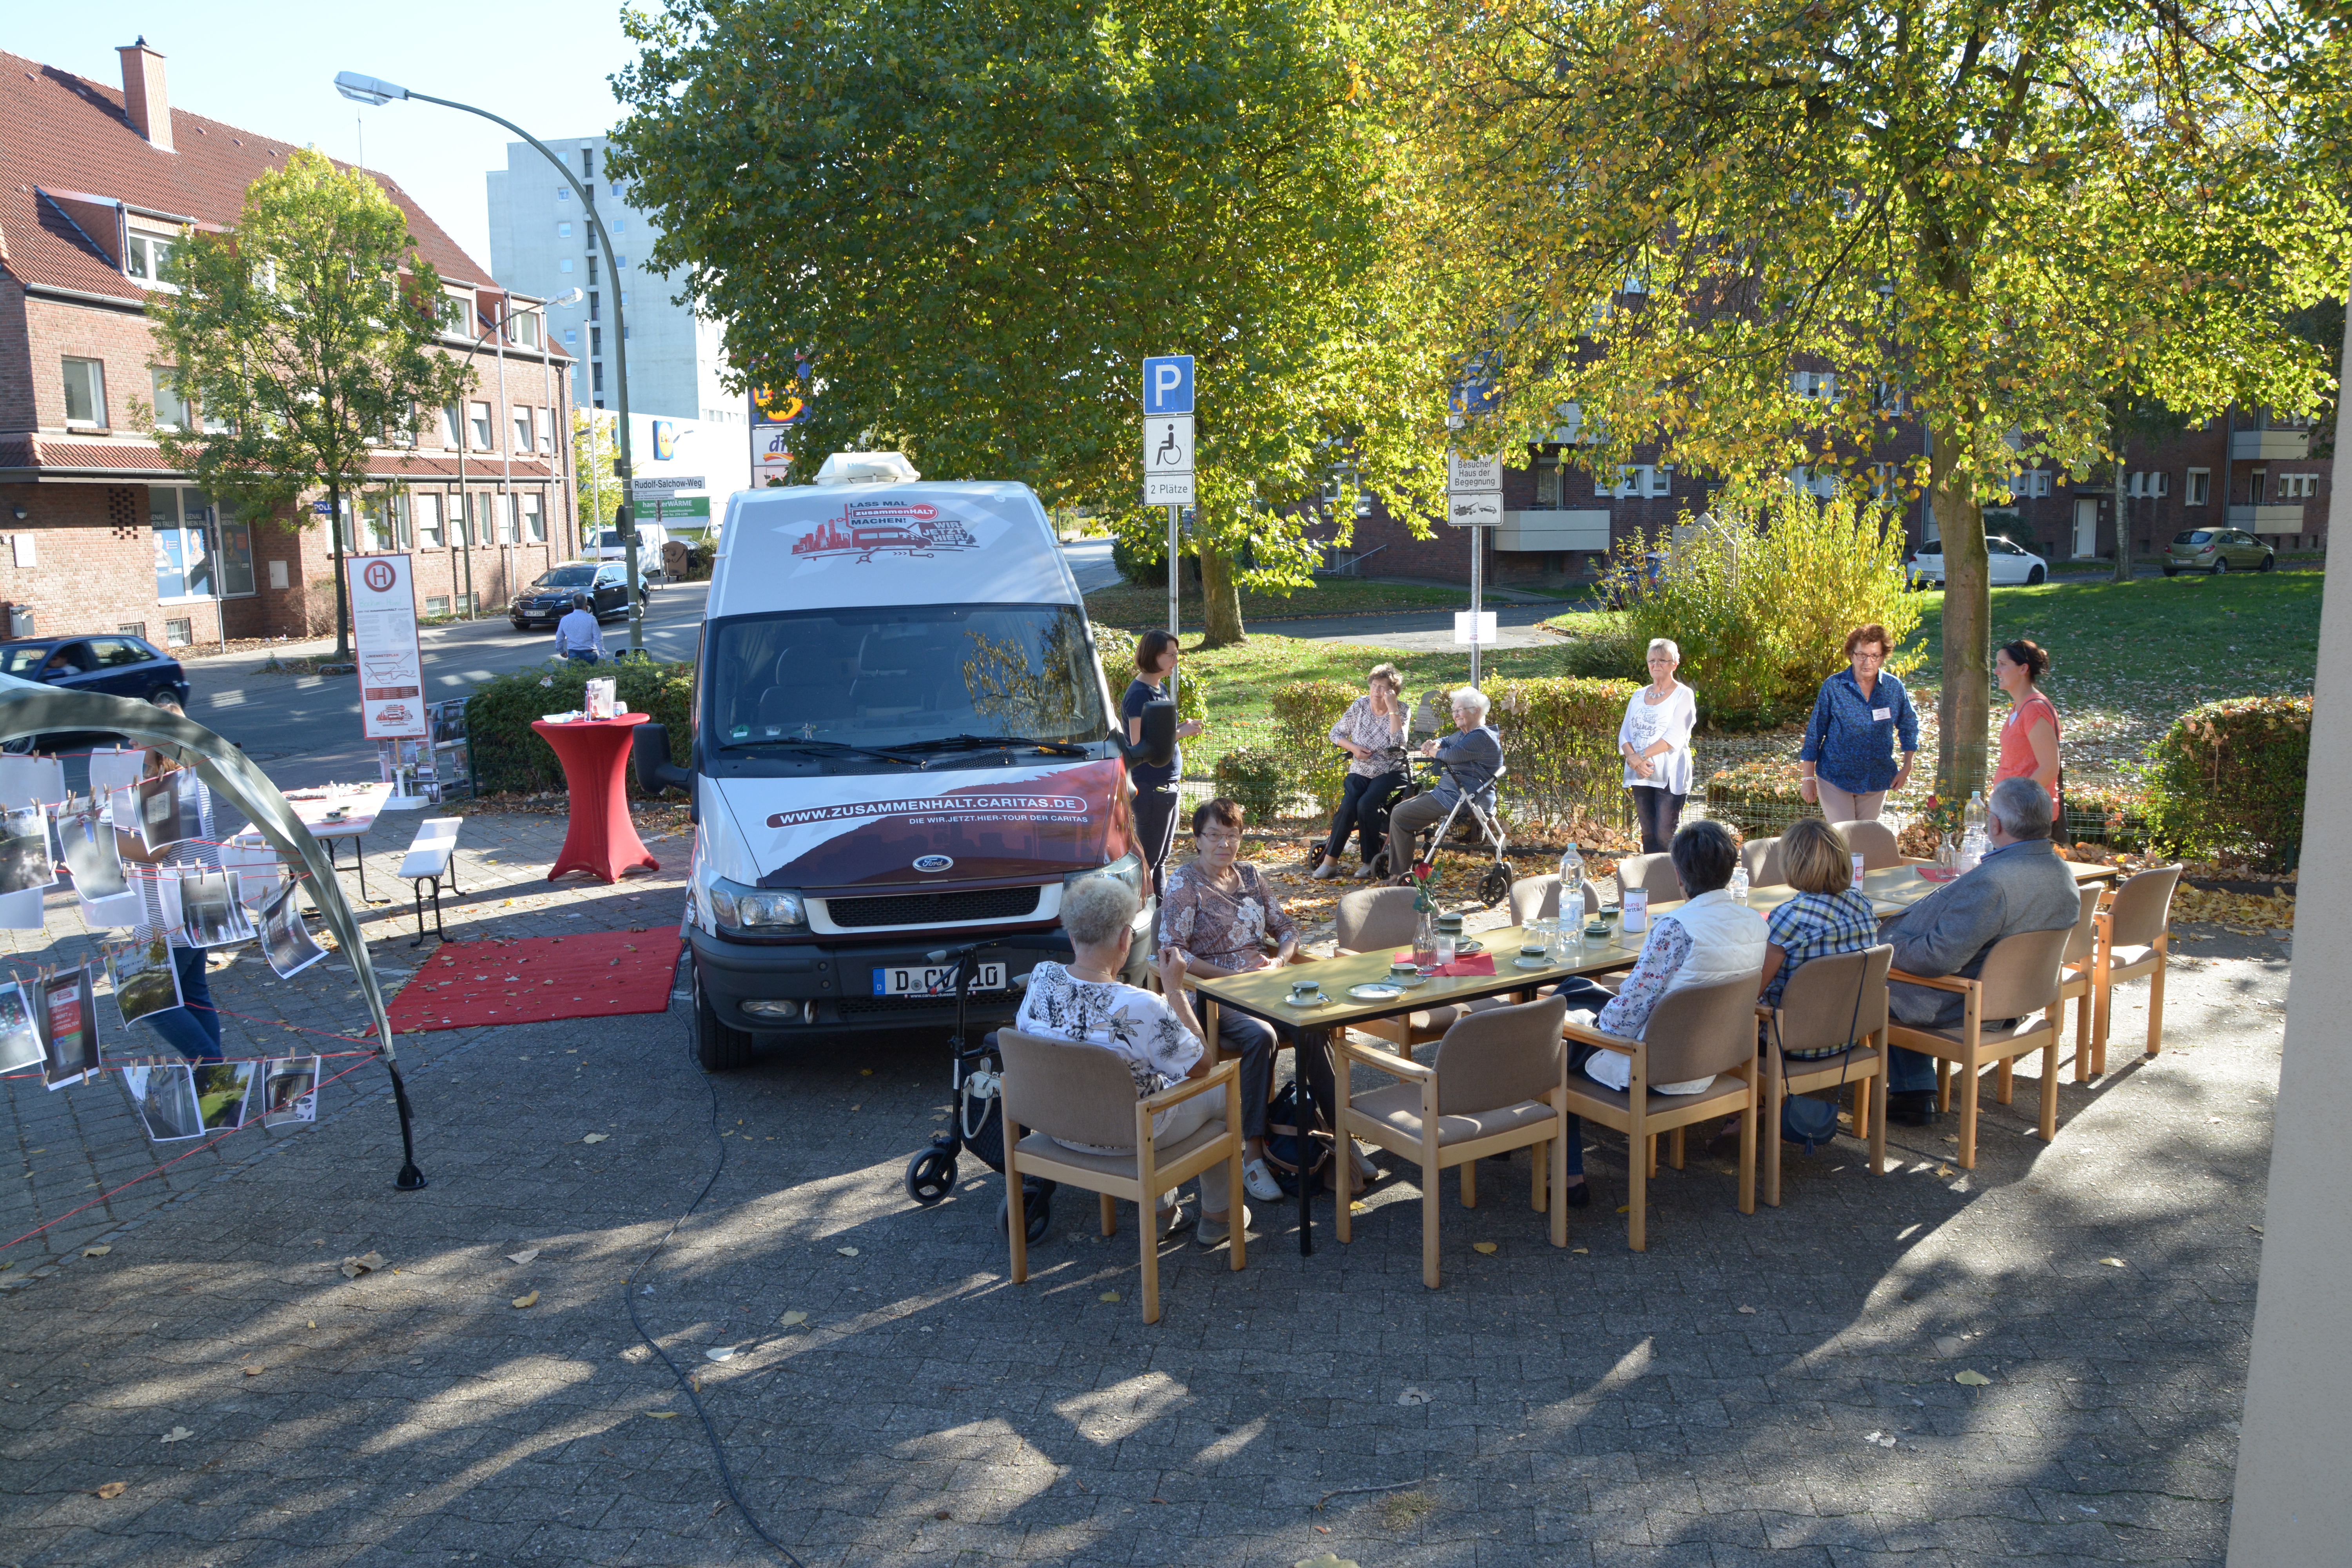 Der Tourbus "Lass mal zusammenHALT machen" in Hamm